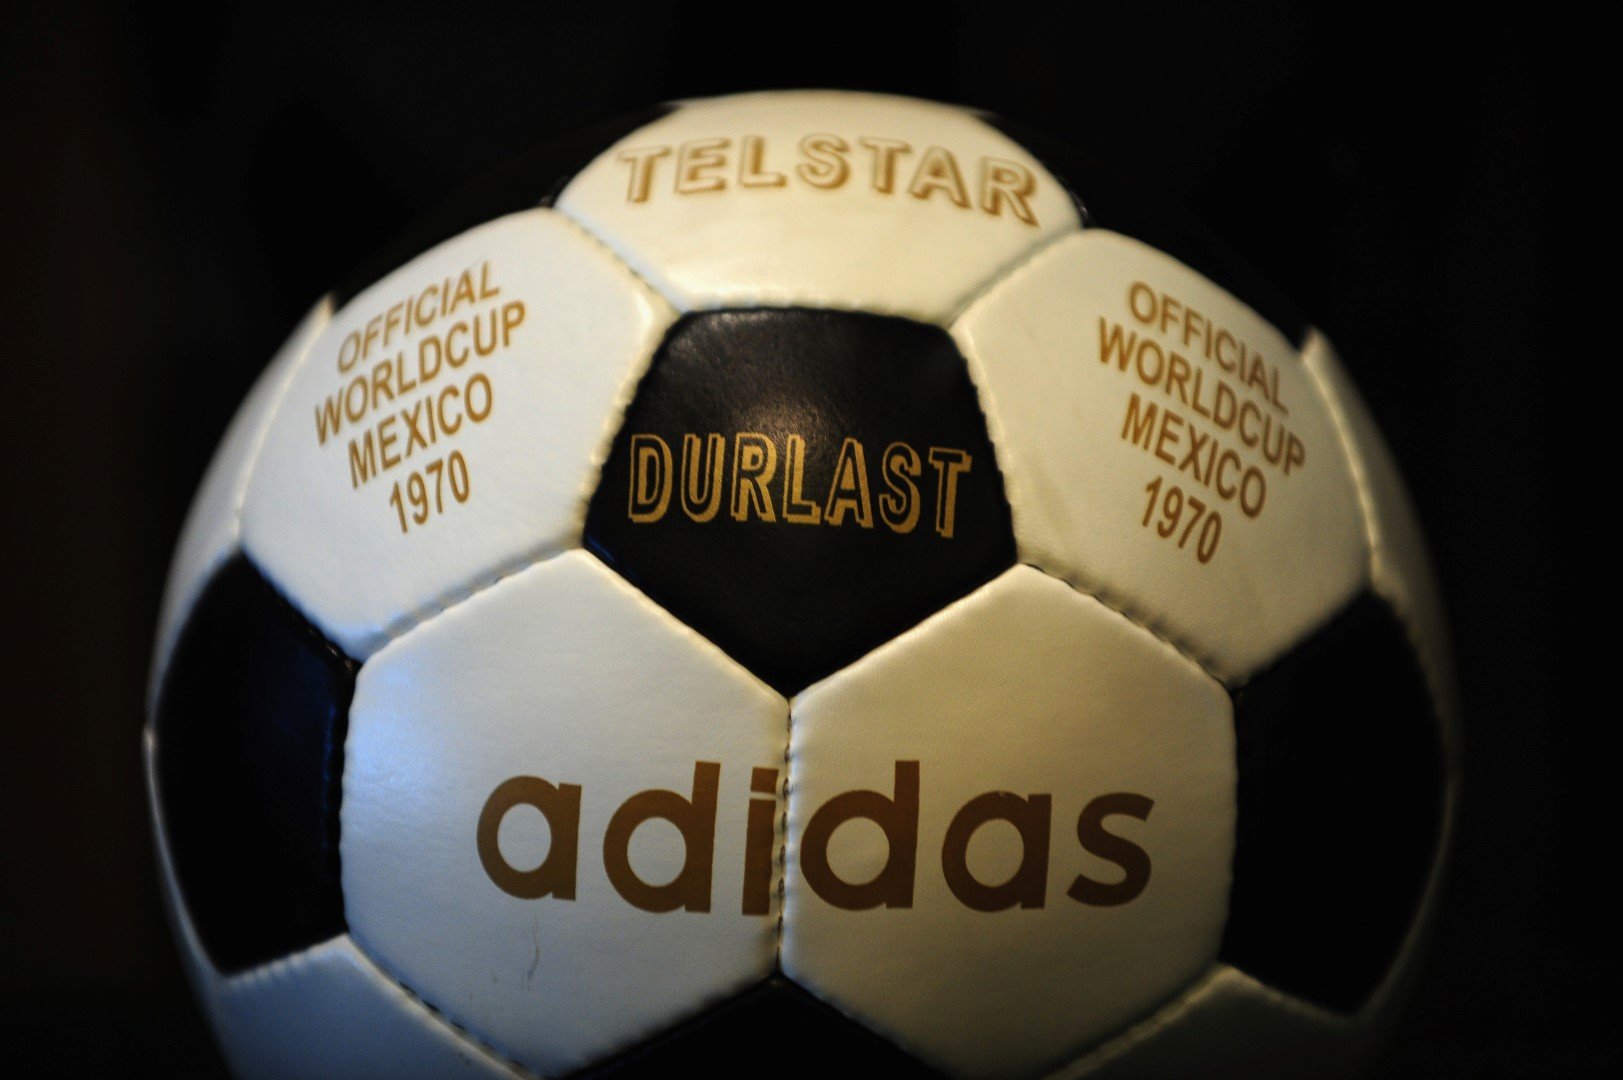 1970 г. - Мондиалите по футбол вече са глобален феномен, а топката "Telstar Durlast" на Адидас е първата, представяна пред света като "звезда" на турнира. Днес такава, с която е игран мач от турнира, струва по аукциони по няколко хиляди евро